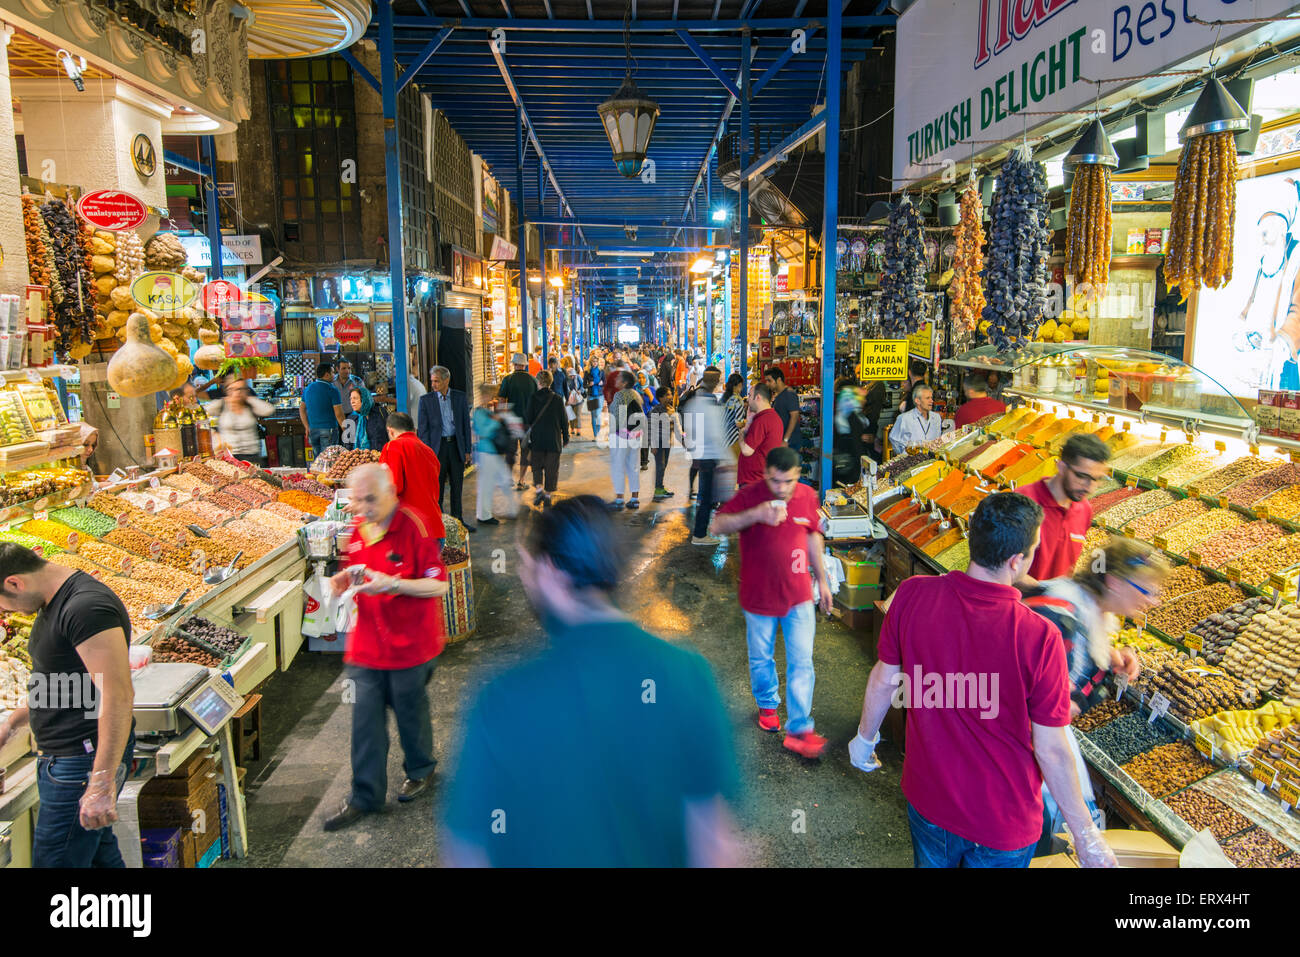 Vue de l'intérieur du marché aux épices ou bazar Egyptien, Istanbul, Turquie Banque D'Images